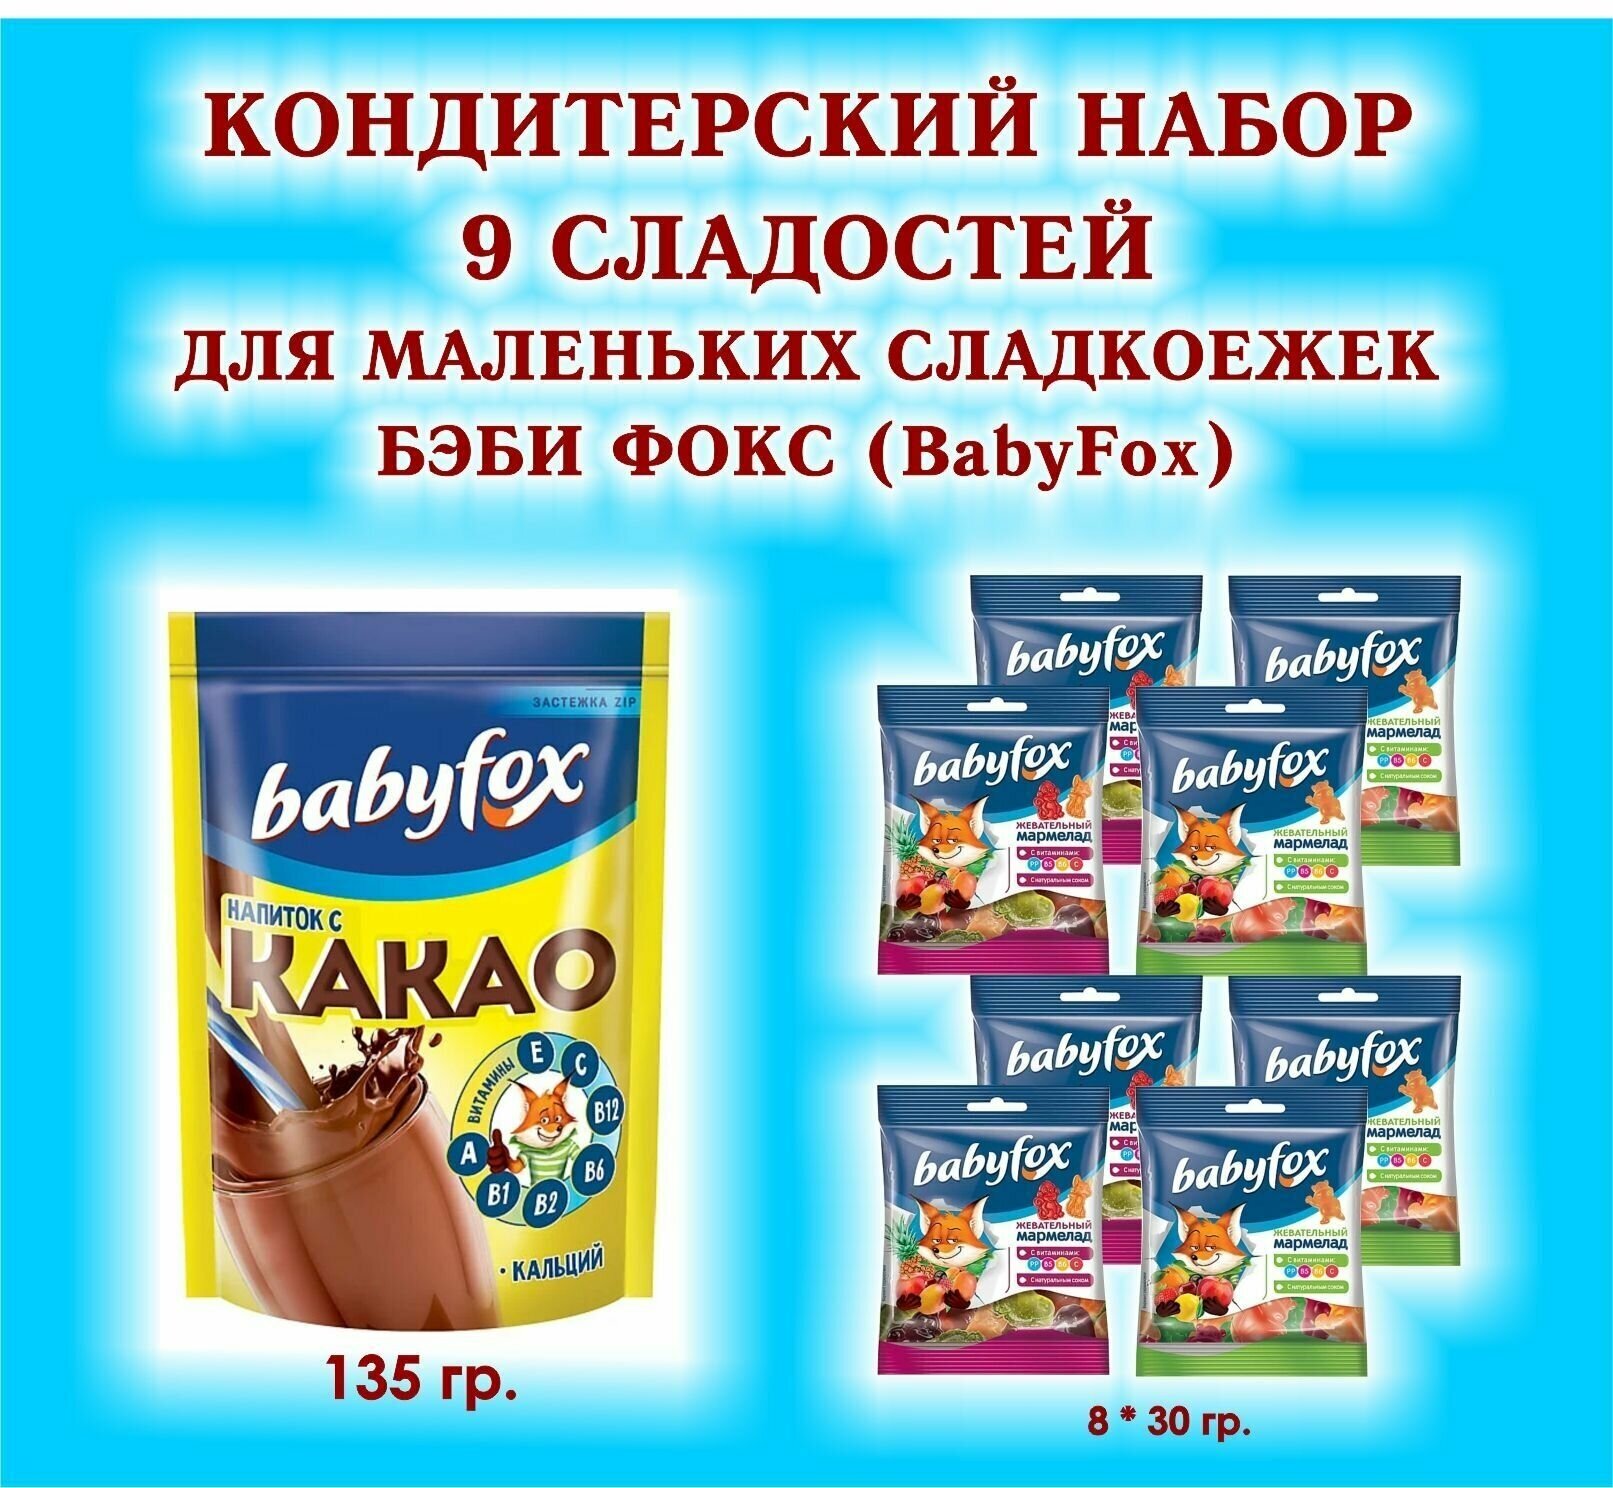 Набор сладостей "BabyFox" - Мармелад жевательный 8 по 30 гр. + какао 1*135 гр. - подарок для Маленьких сладкоежек